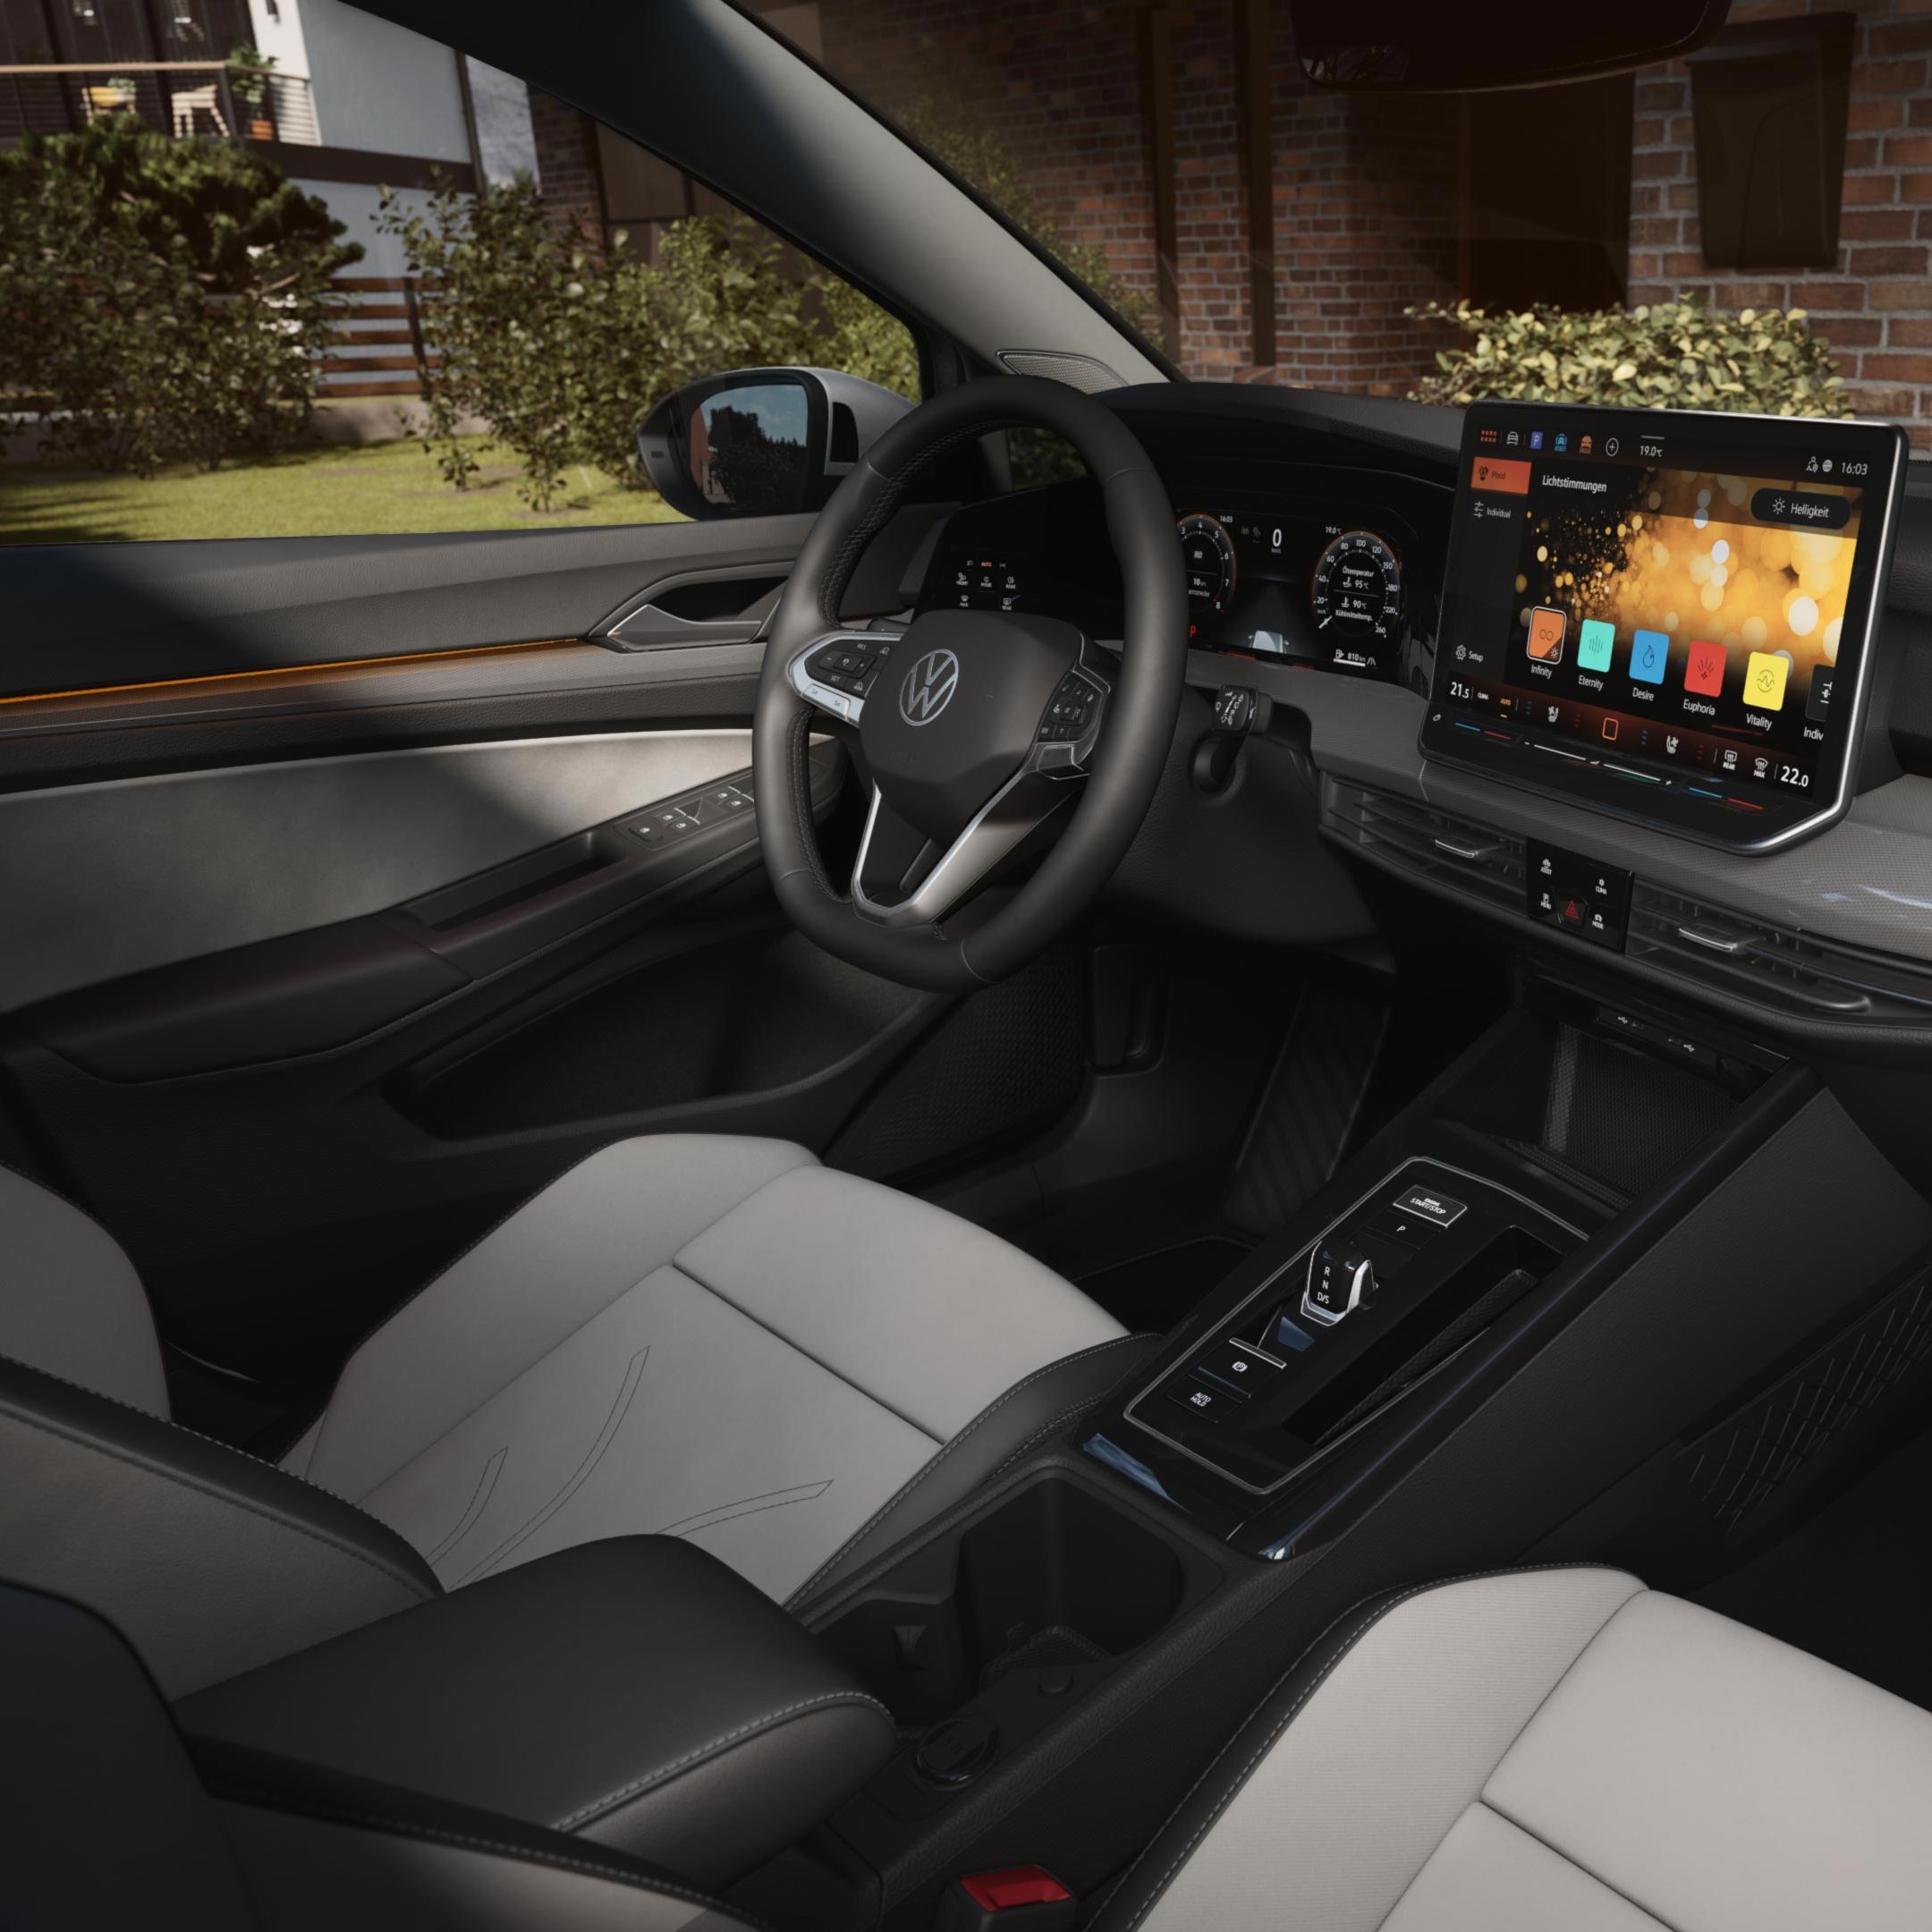 Lenkrad, Digital Cockpit, Ambientebeleuchtung, Sitze und Infotainment des VW Golf Variant